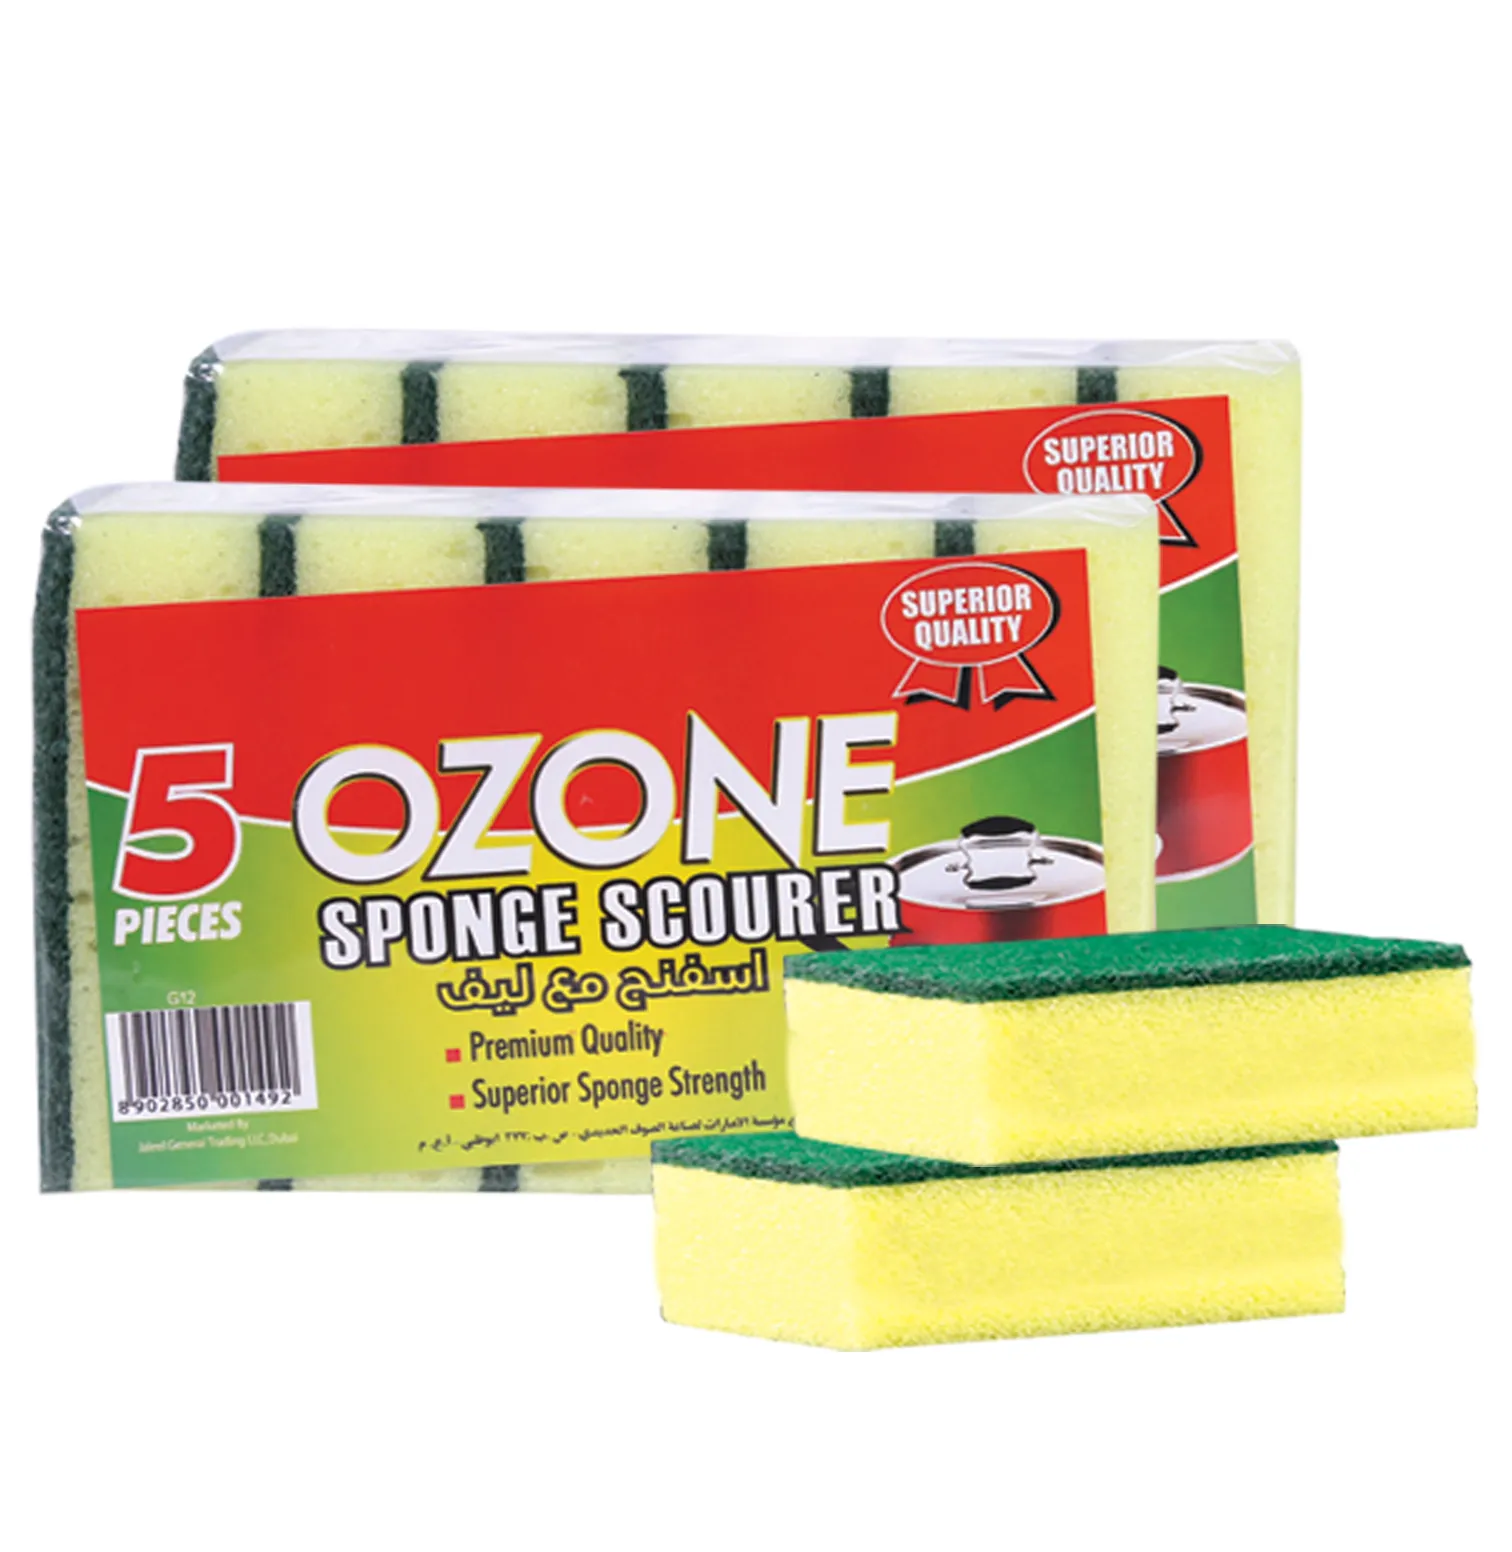 Ozone Plastic Sponge Scourer, 2 Packet